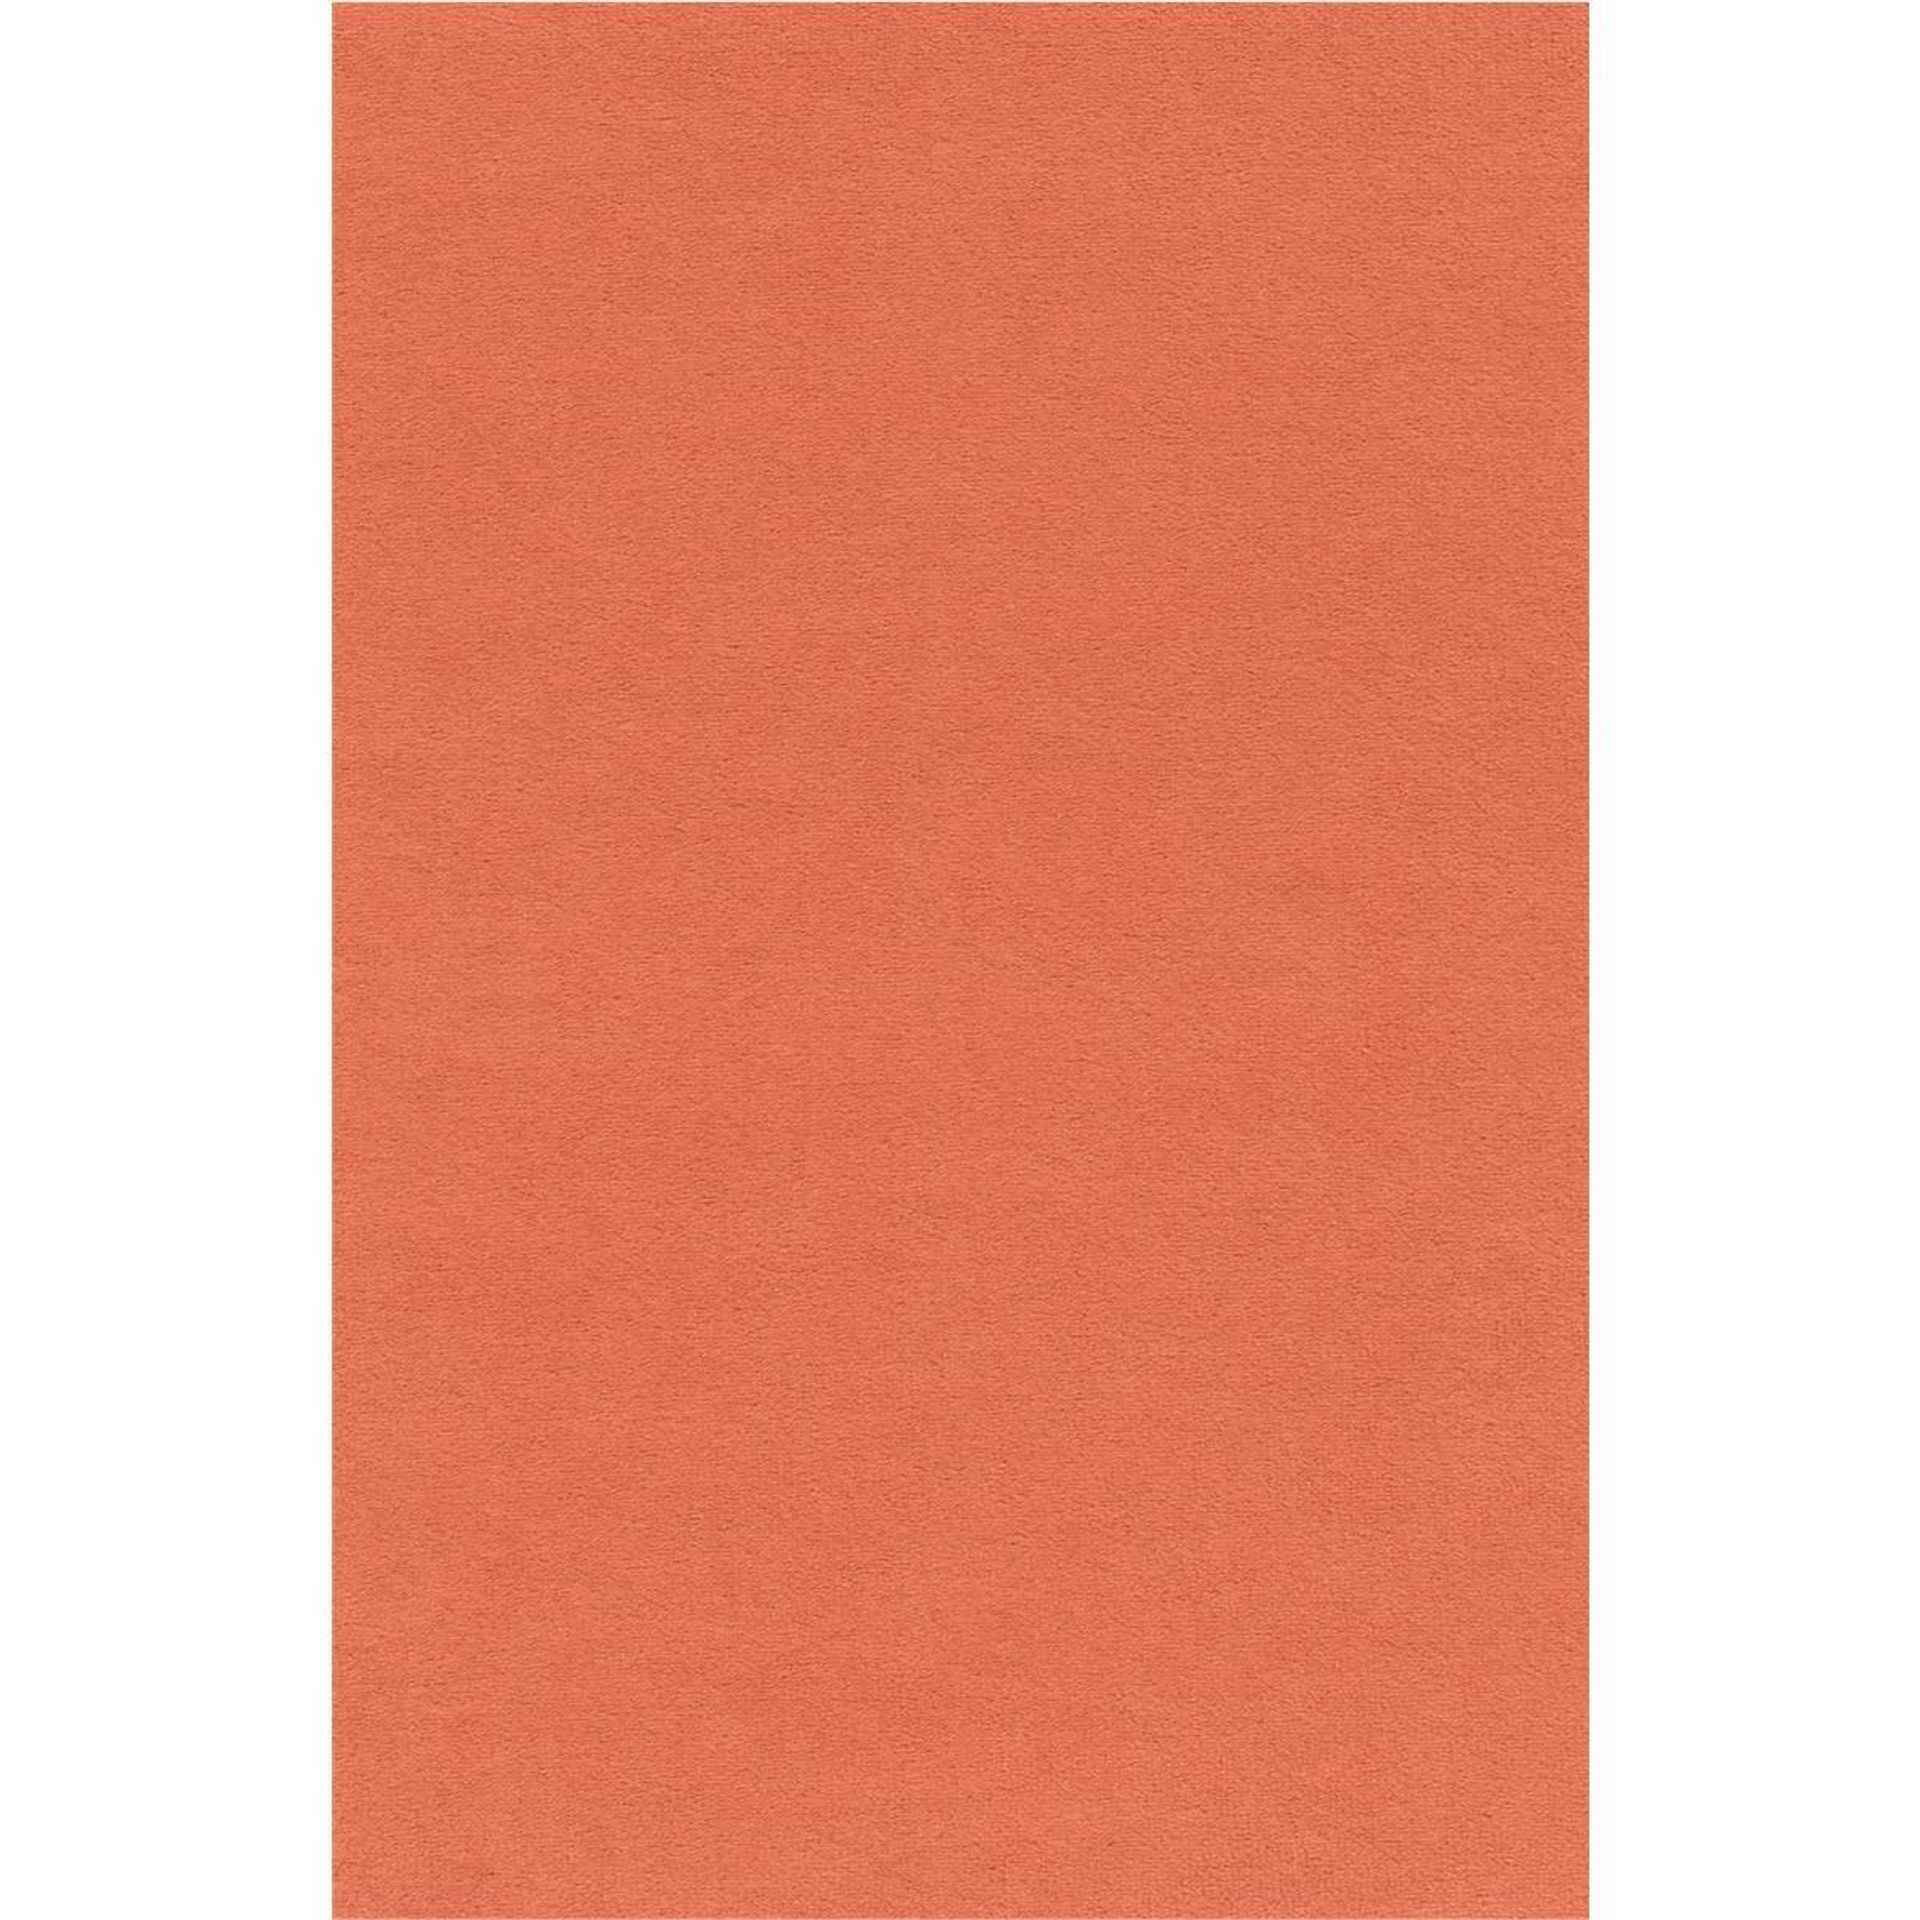 Teppichboden Vorwerk Passion 1000 MODENA Velours Orange 1P00 - Rollenbreite 400 cm